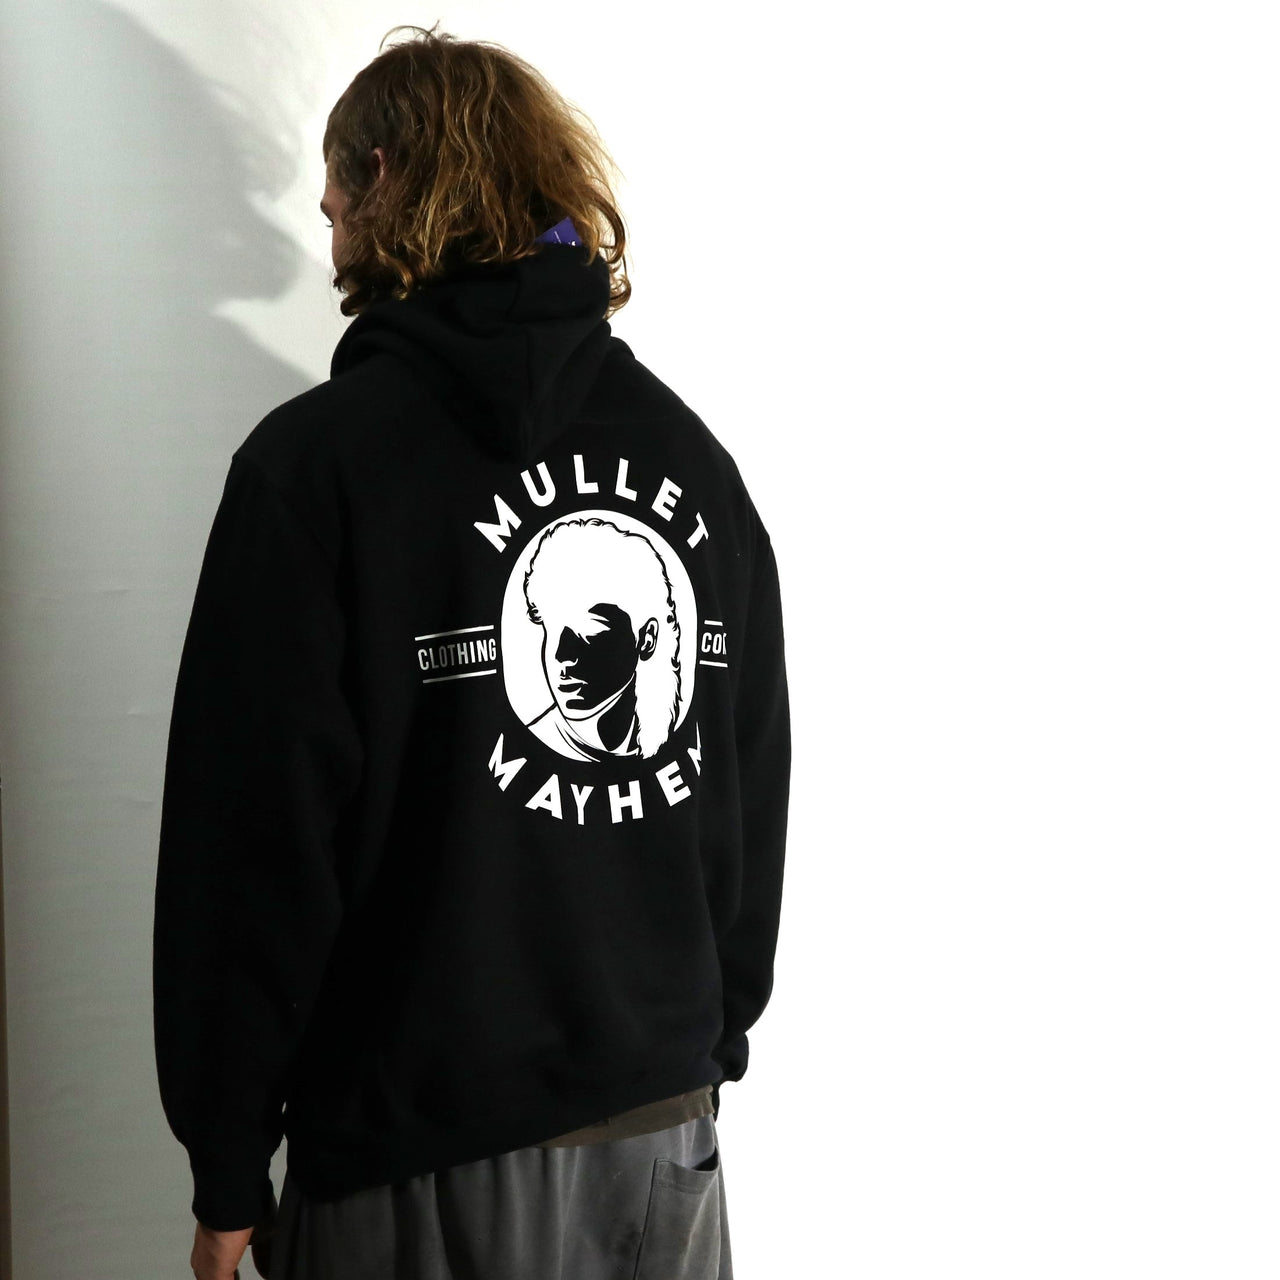 Mullet Mayhem Clothing Co. (Hoodie)